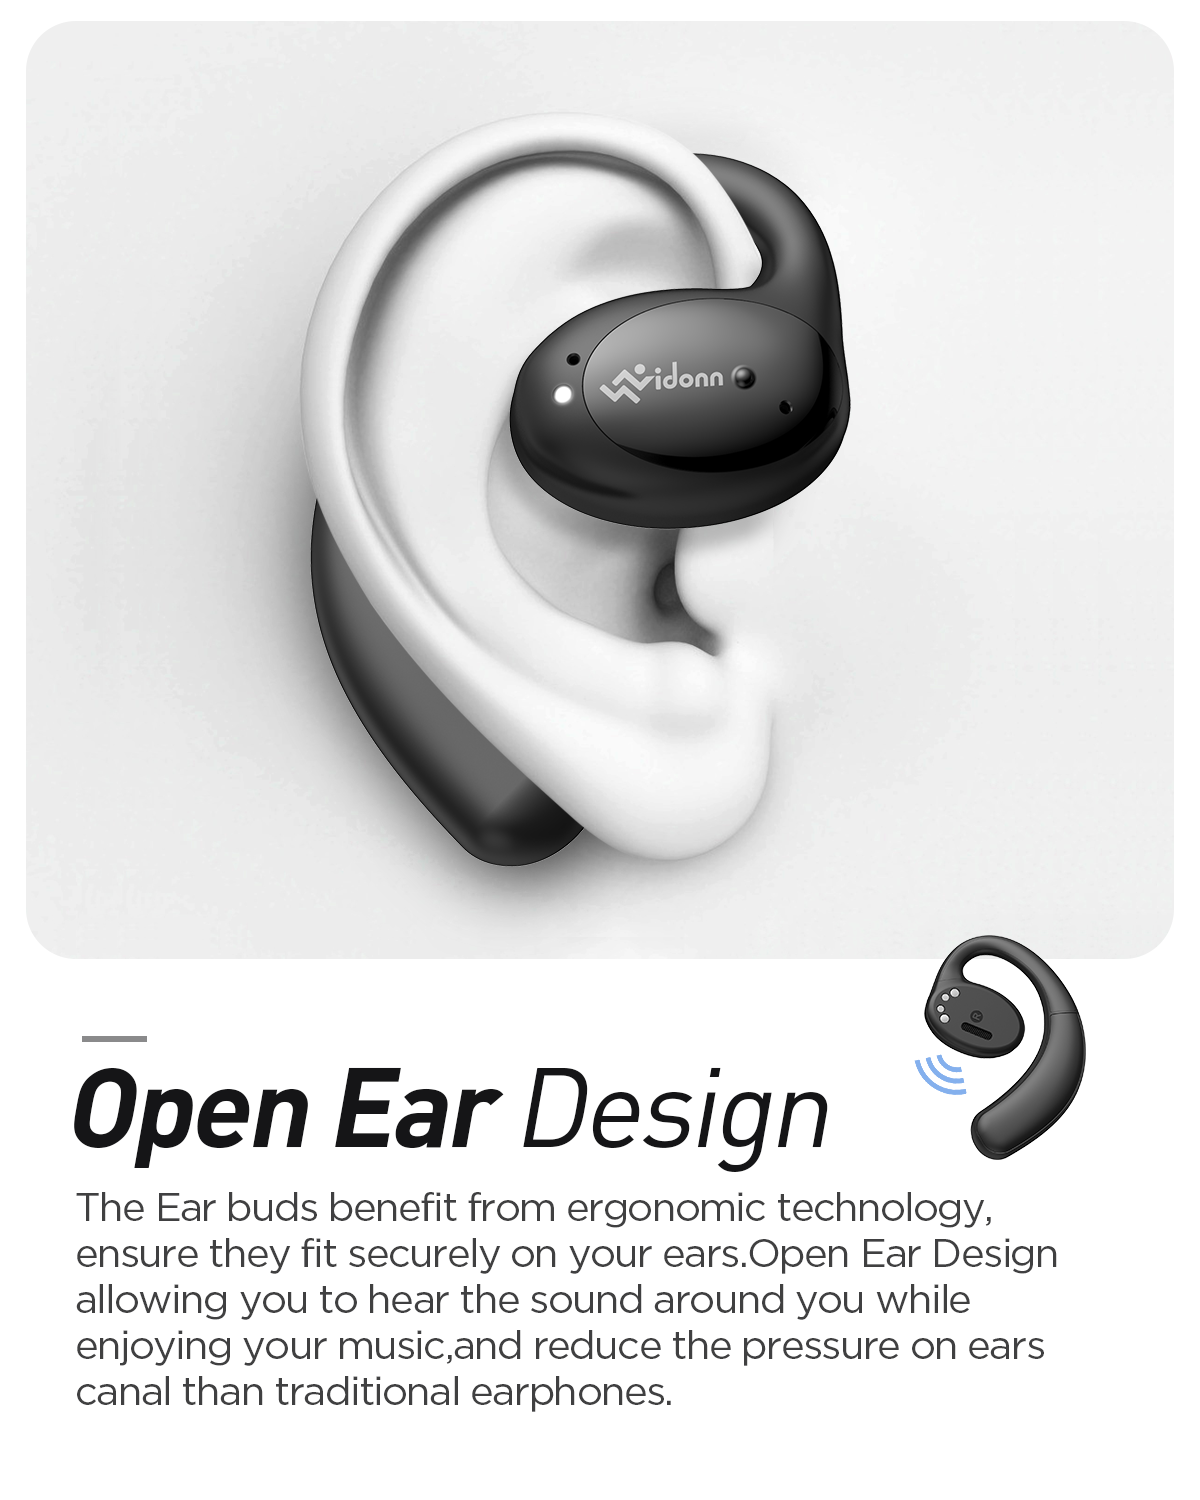 Open ear design